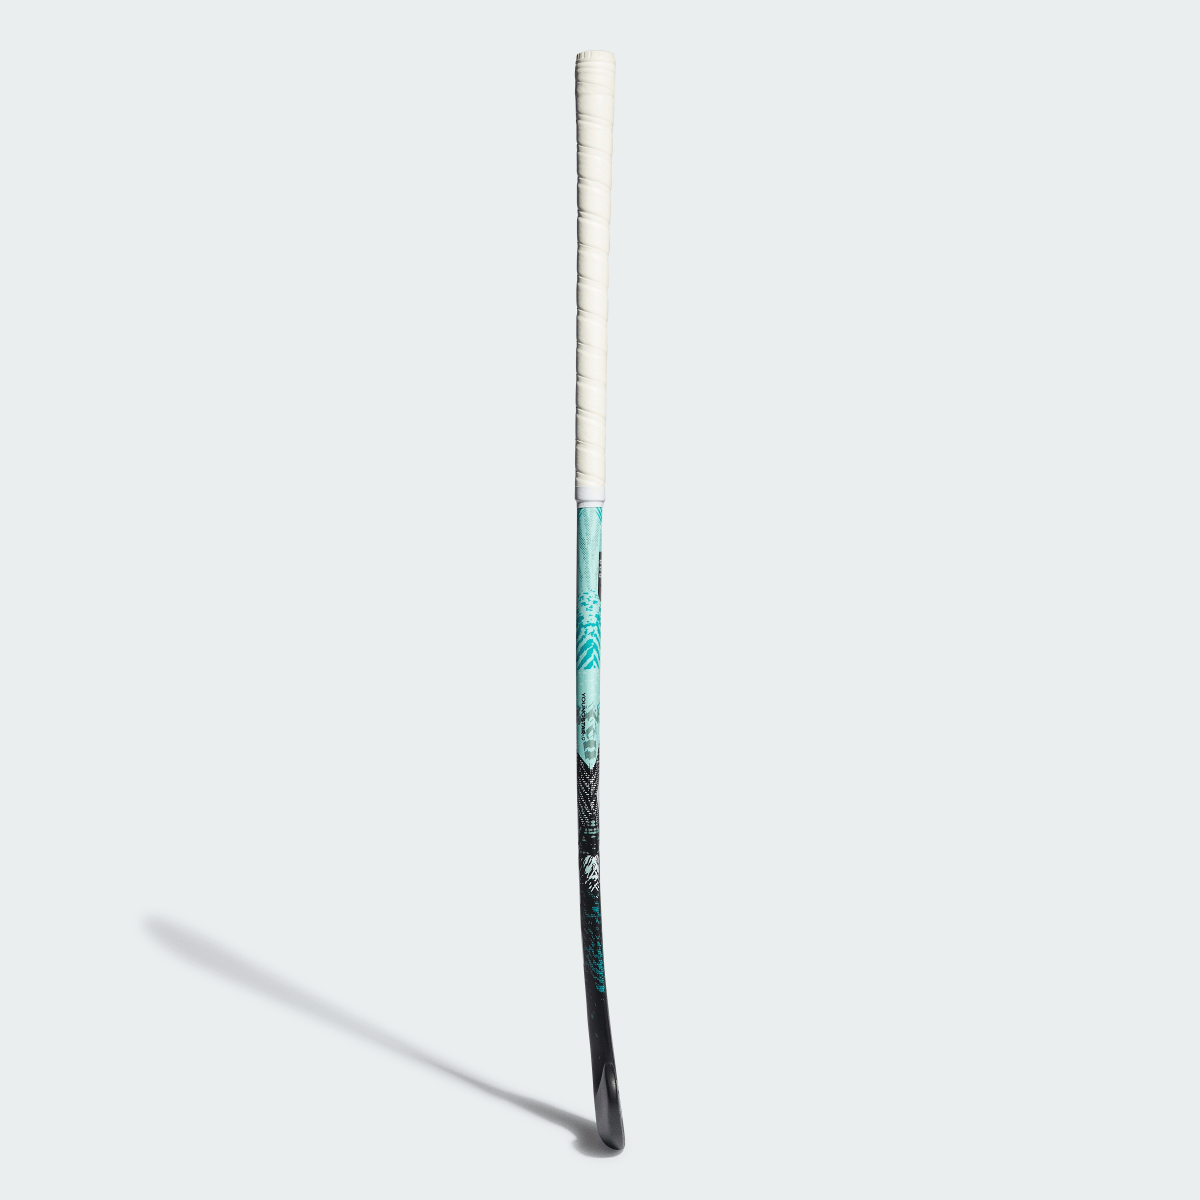 Adidas Stick de hockey hierba Youngstar.9 61 cm. 4